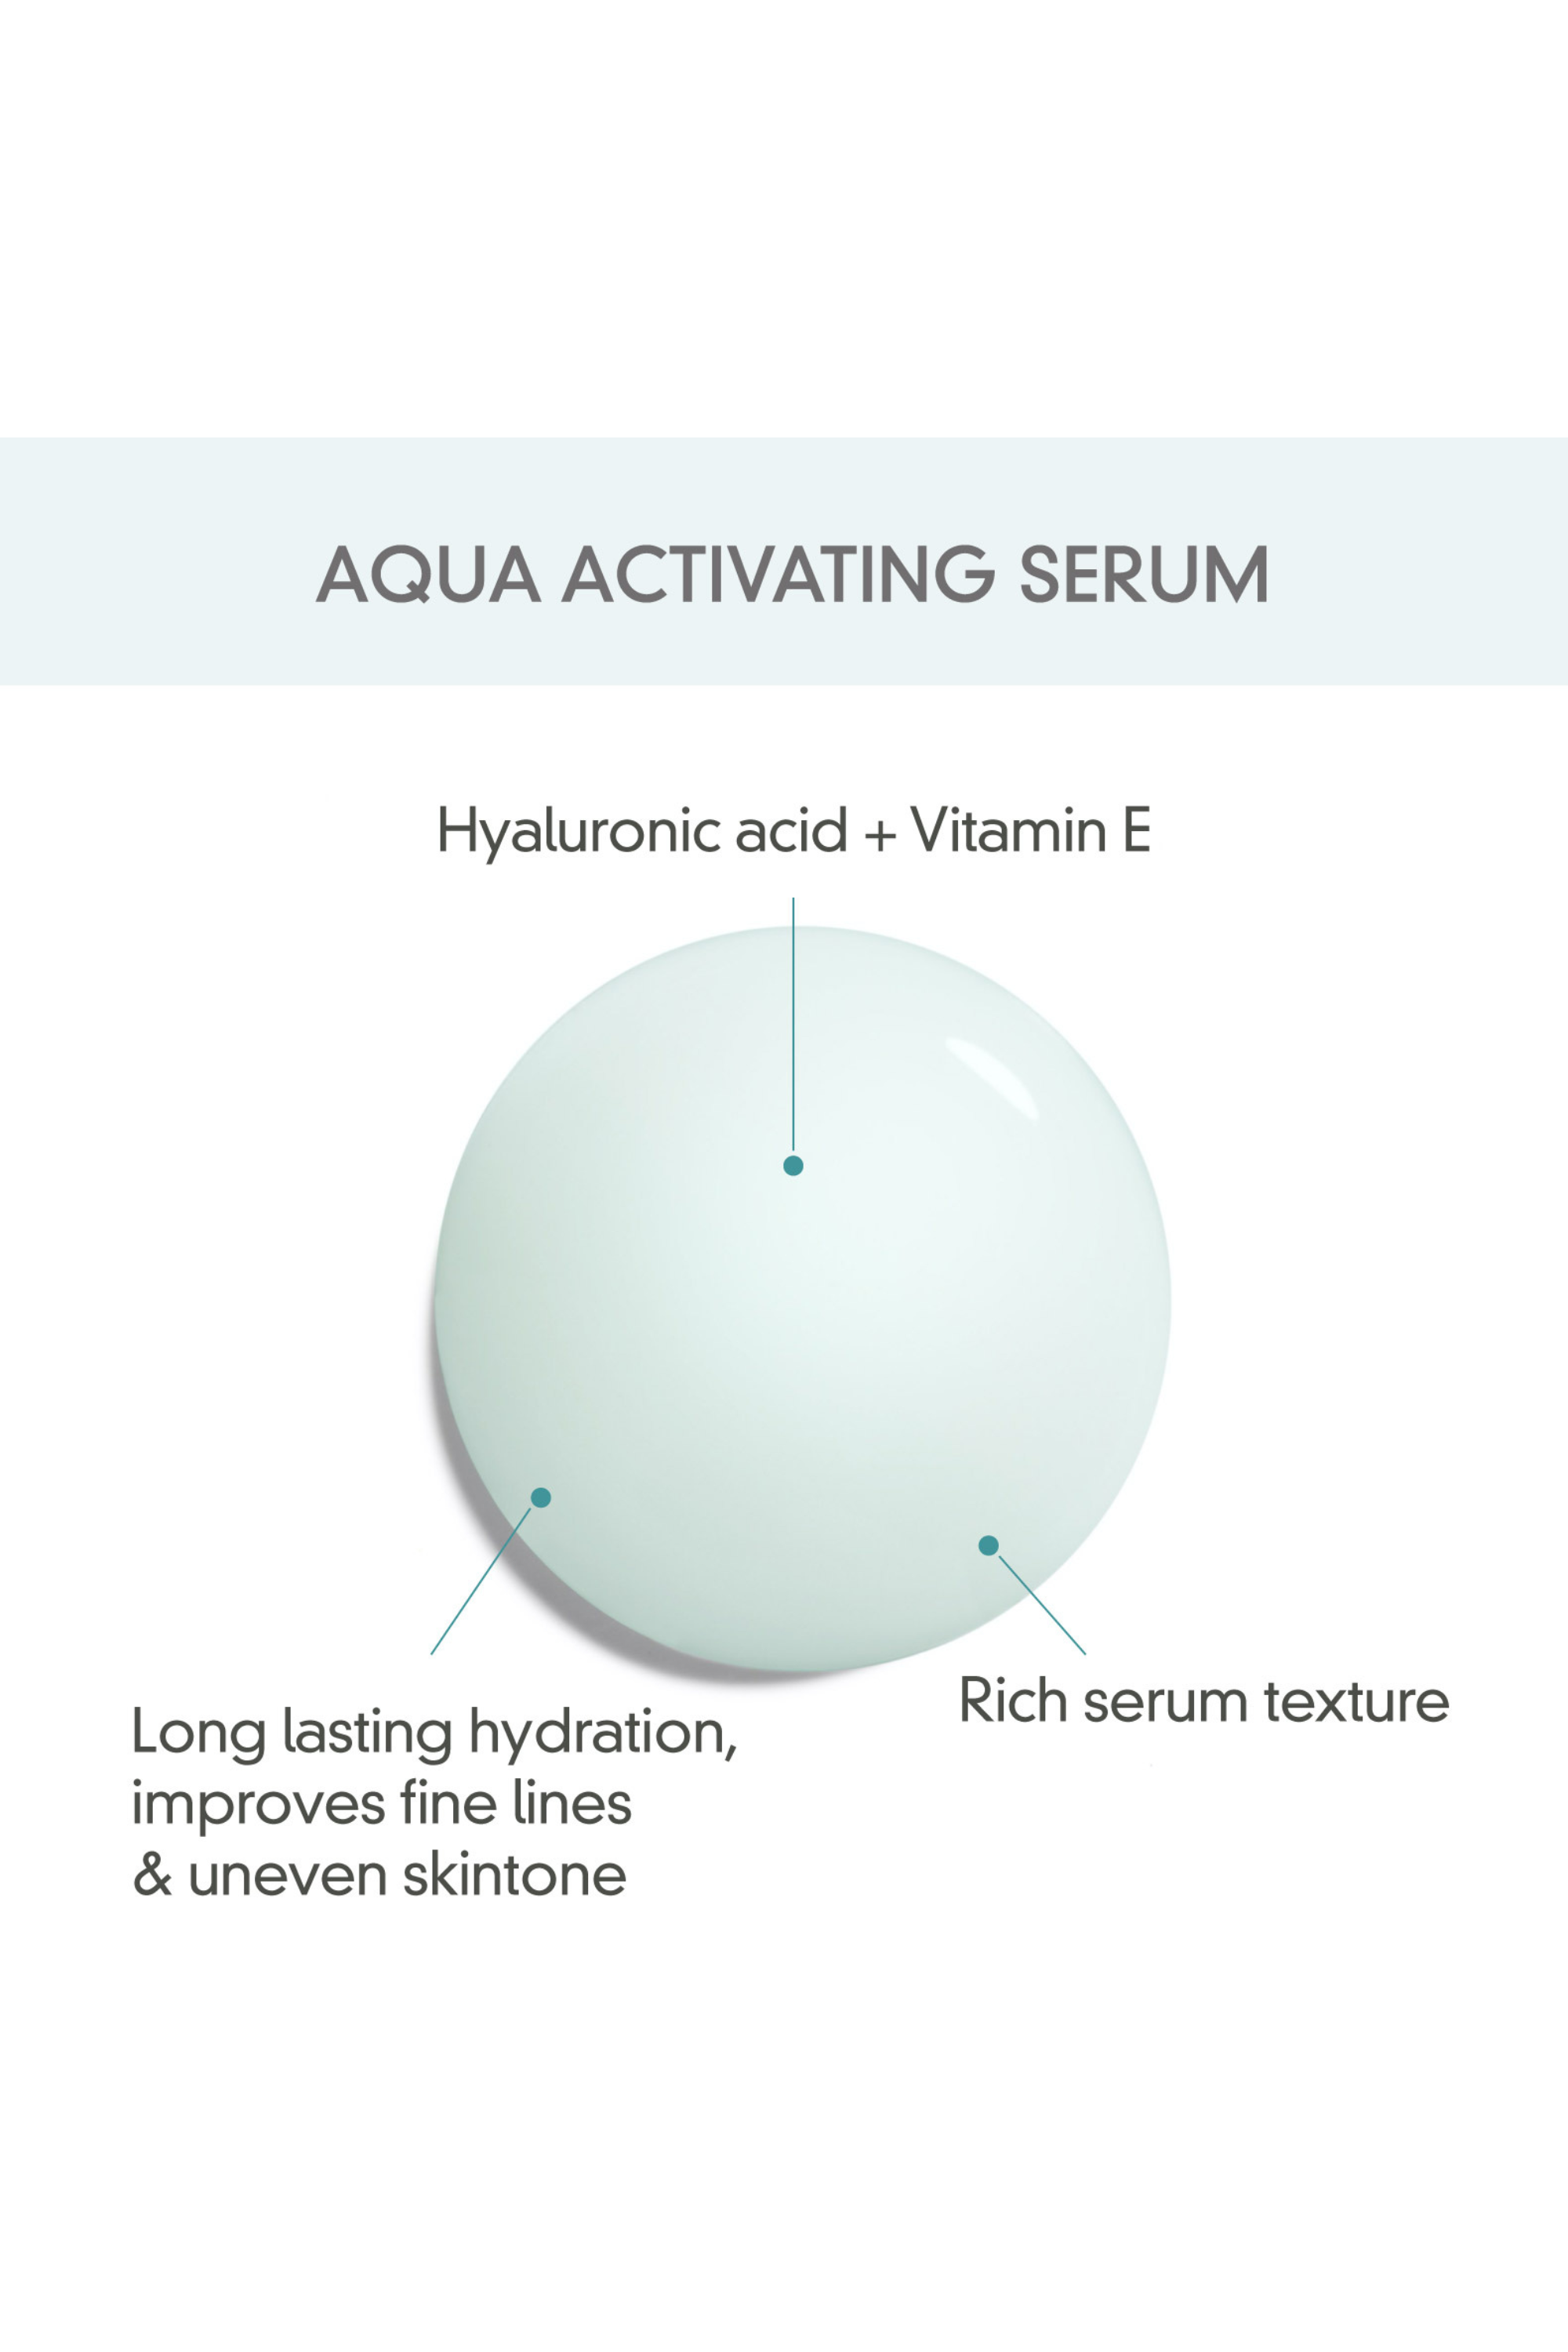 Aqua Activating Serum - Rovectin Skin Essentials